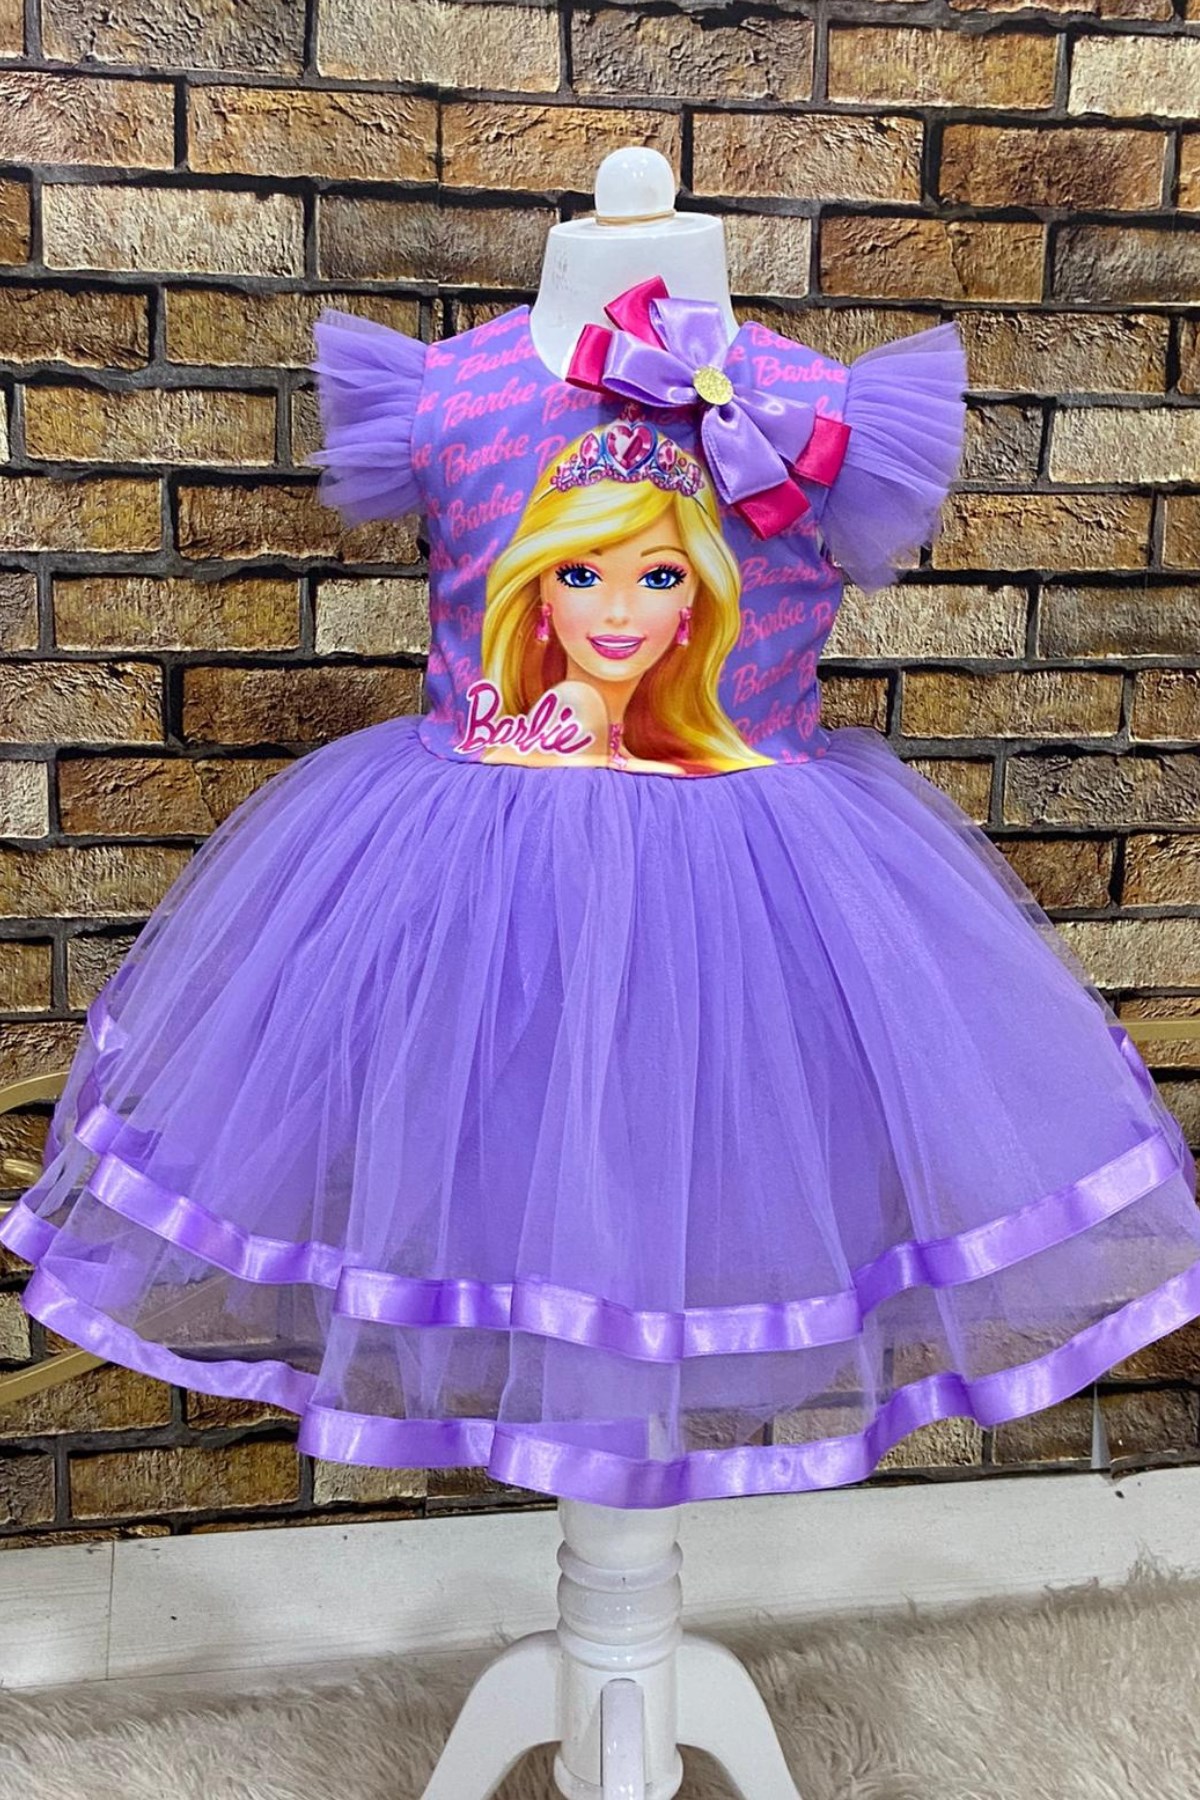 Barbie Tütülü Toka Dahil Kız Çocuk Elbise Lila | Turuncugardrop.com